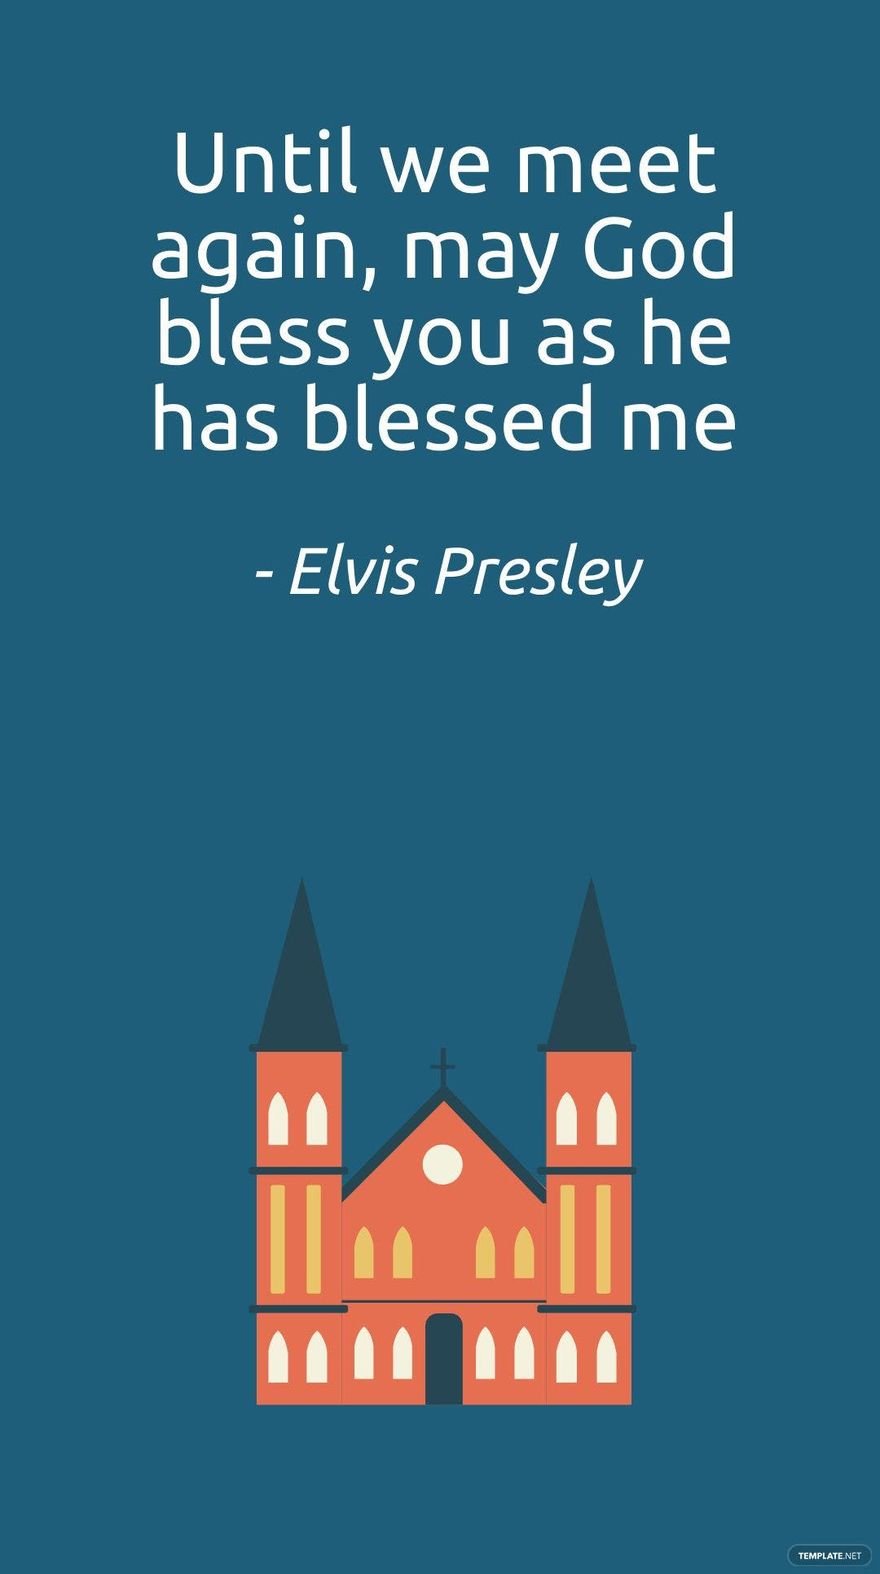 Free Elvis Presley - Until we meet again, may God bless you as he has blessed me in JPG